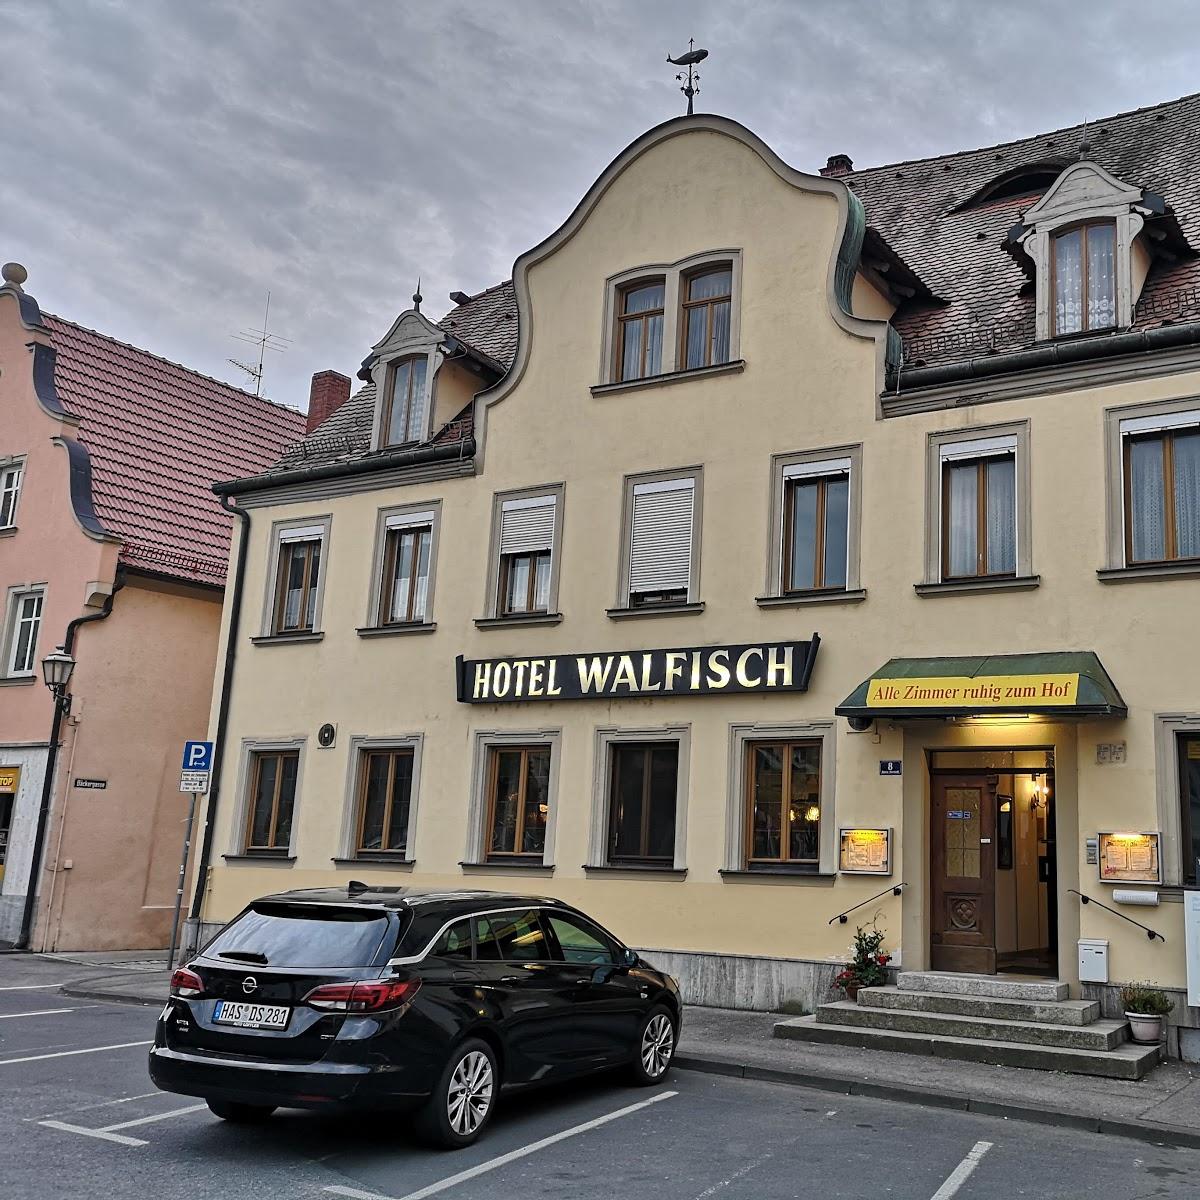 Restaurant "Hotel Walfisch" in Haßfurt